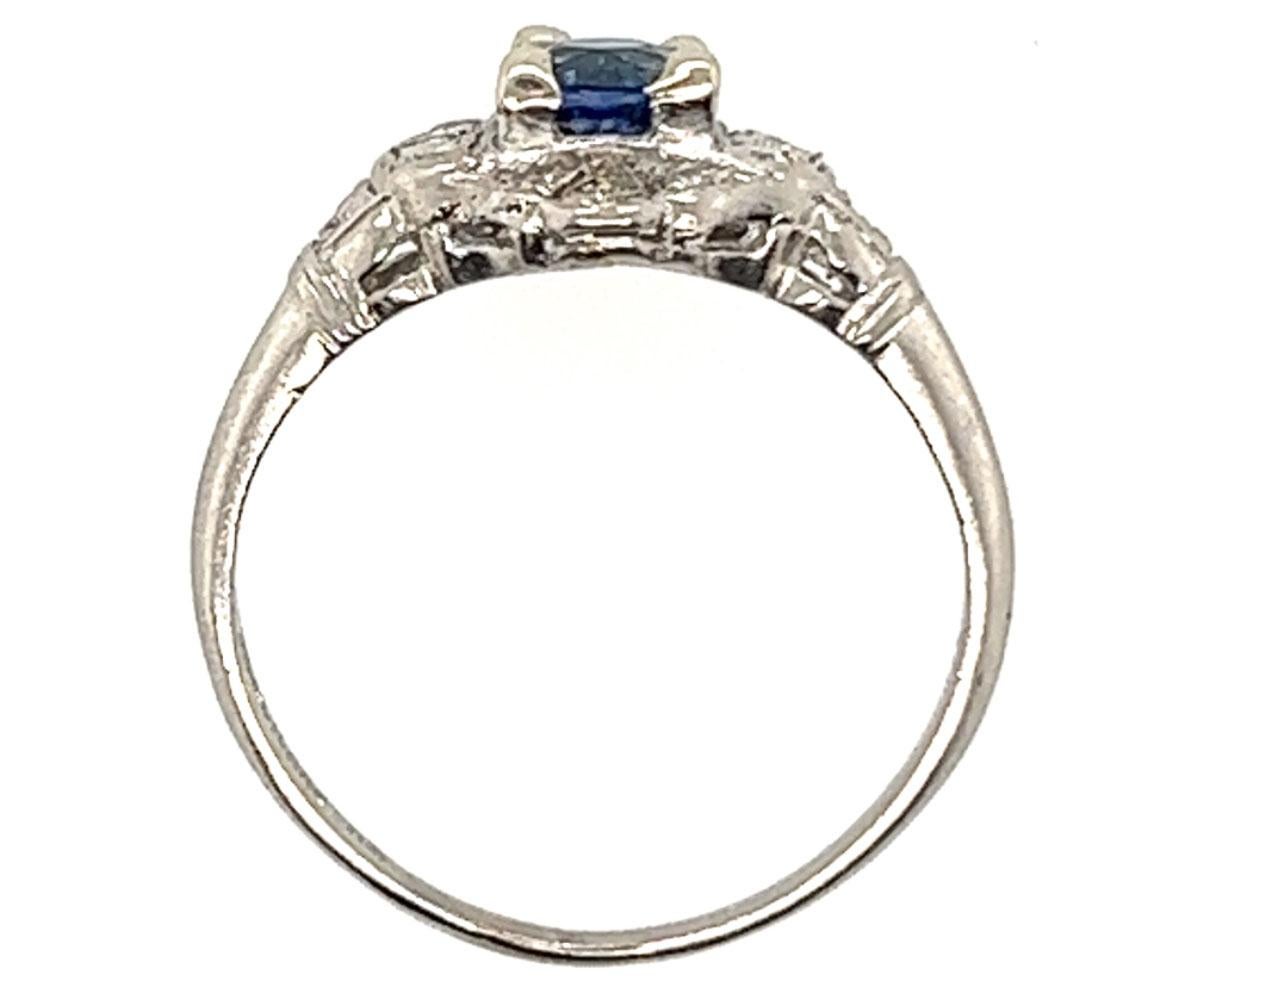 Véritable Original Art Deco Antique from 1930's Vintage Sapphire Diamond Ring .80ct Round Platinum 


Centre en saphir rond naturel bleu foncé de 60 carat.

12 véritables diamants antiques à taille unique extraits de mines naturelles

Bague de